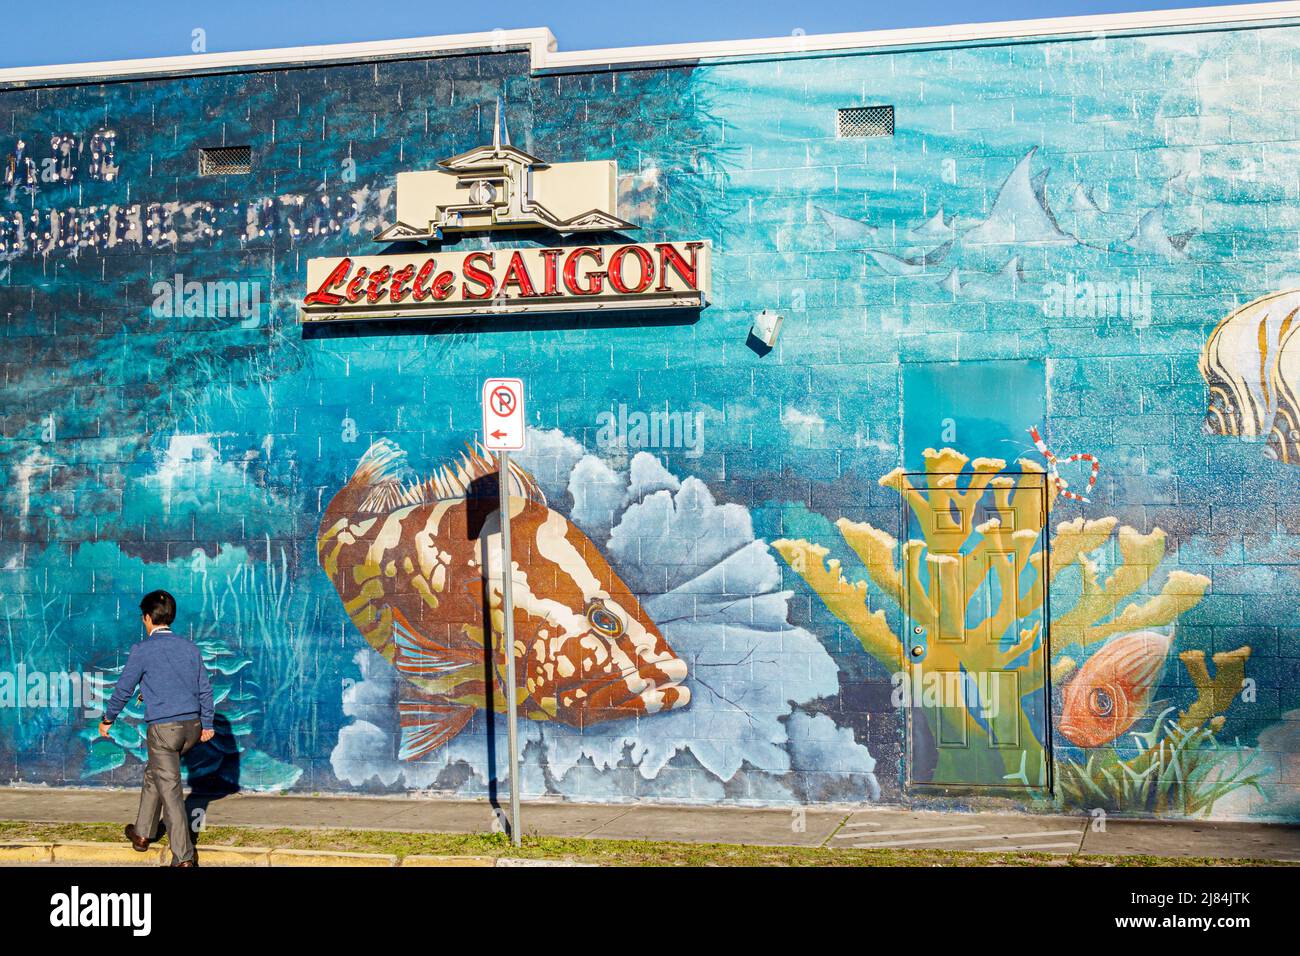 Orlando Floride, East Colonial Drive, Little Saigon, asiatique homme mural bâtiment quartier ethnique Banque D'Images